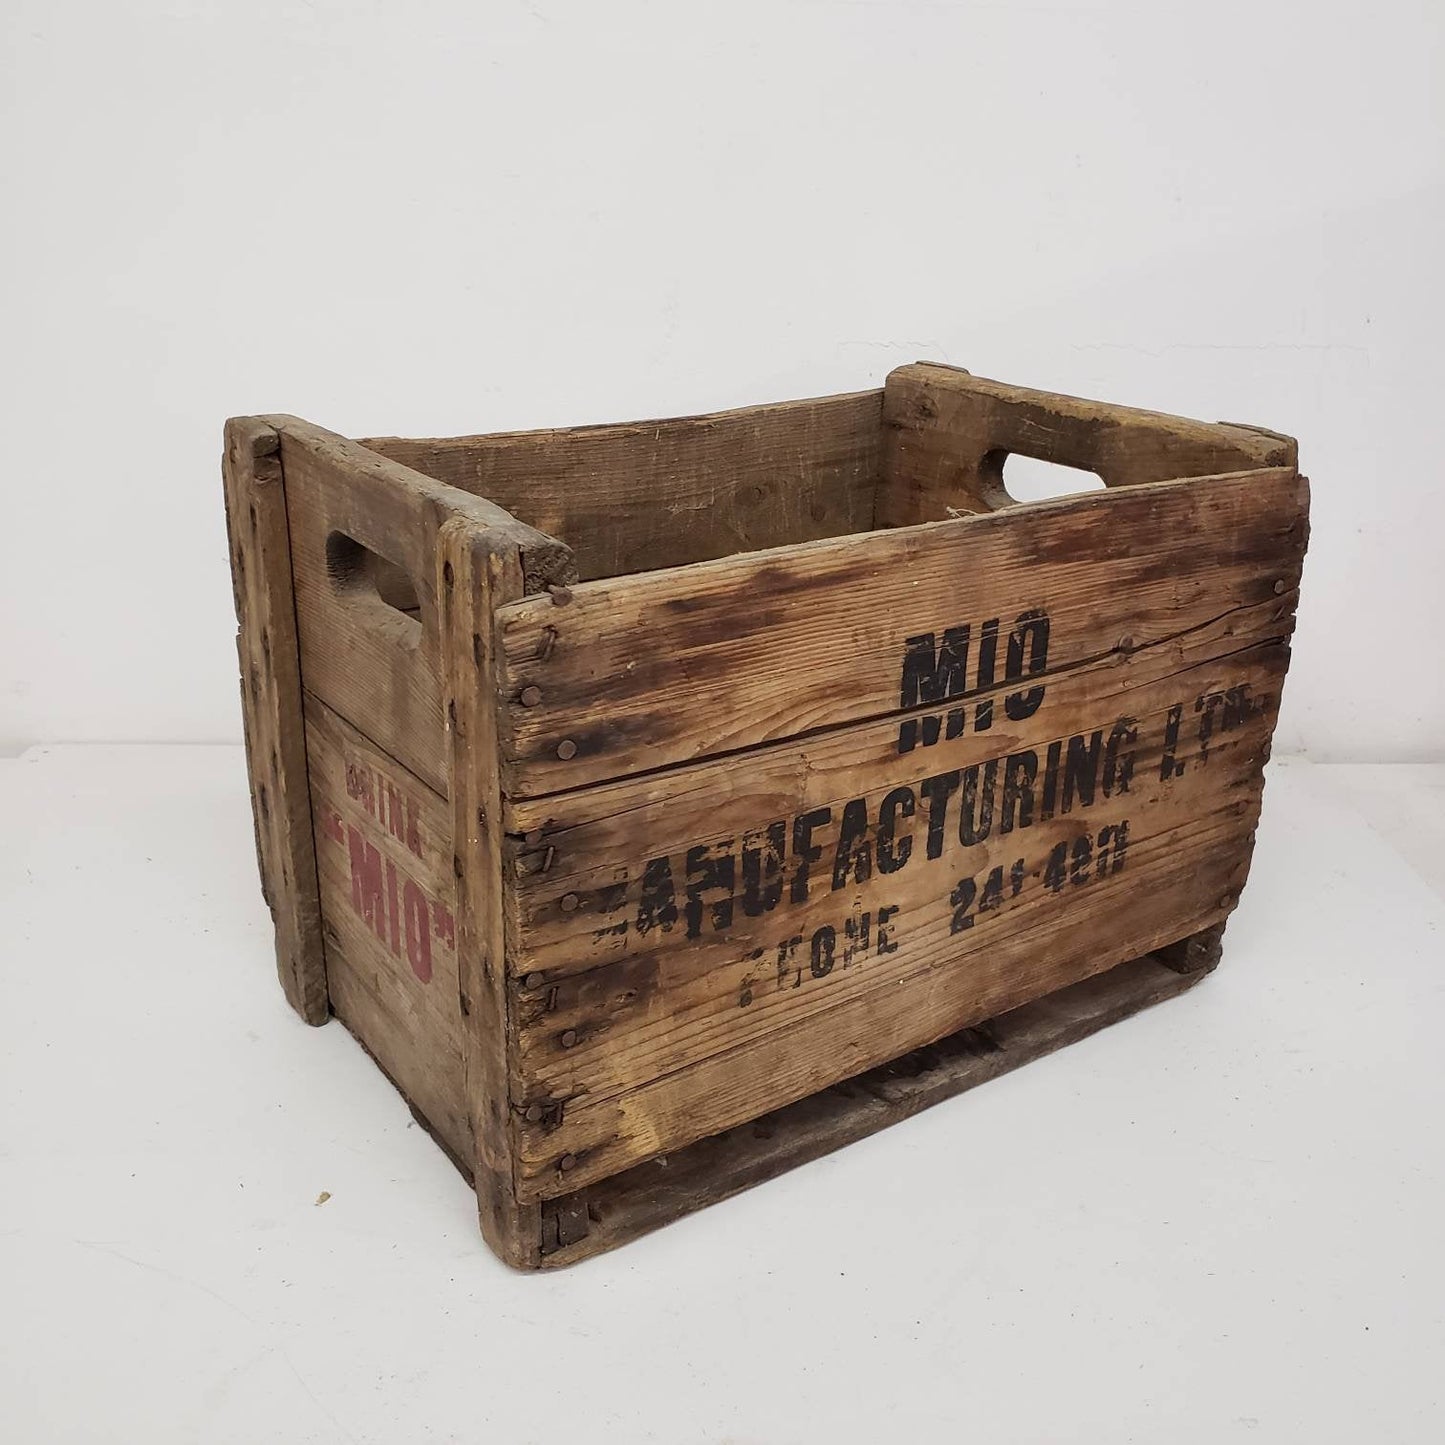 mio crate vintage wooden soda delivery box